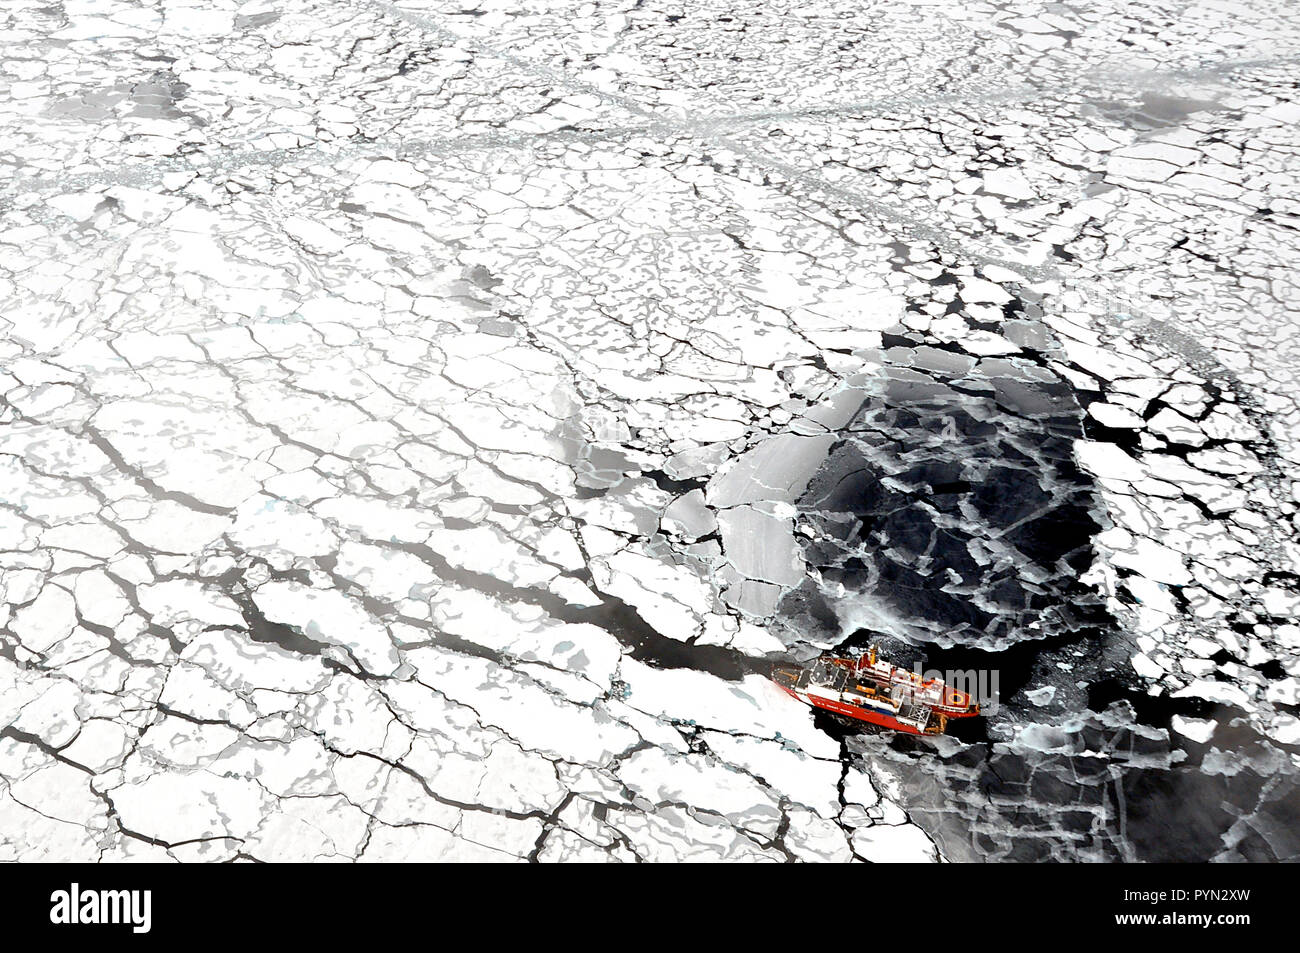 Oceano Artico - Guardia Costiera canadese nave Louis S. St-Laurent cravatte fino ai guardacoste Healy nell'Oceano Artico sett. 5, 2009. Le due navi sono prendendo parte a una pluriennale e multi-agenzia sondaggio Artico che aiuterà a definire l'Artico continentale. Foto Stock